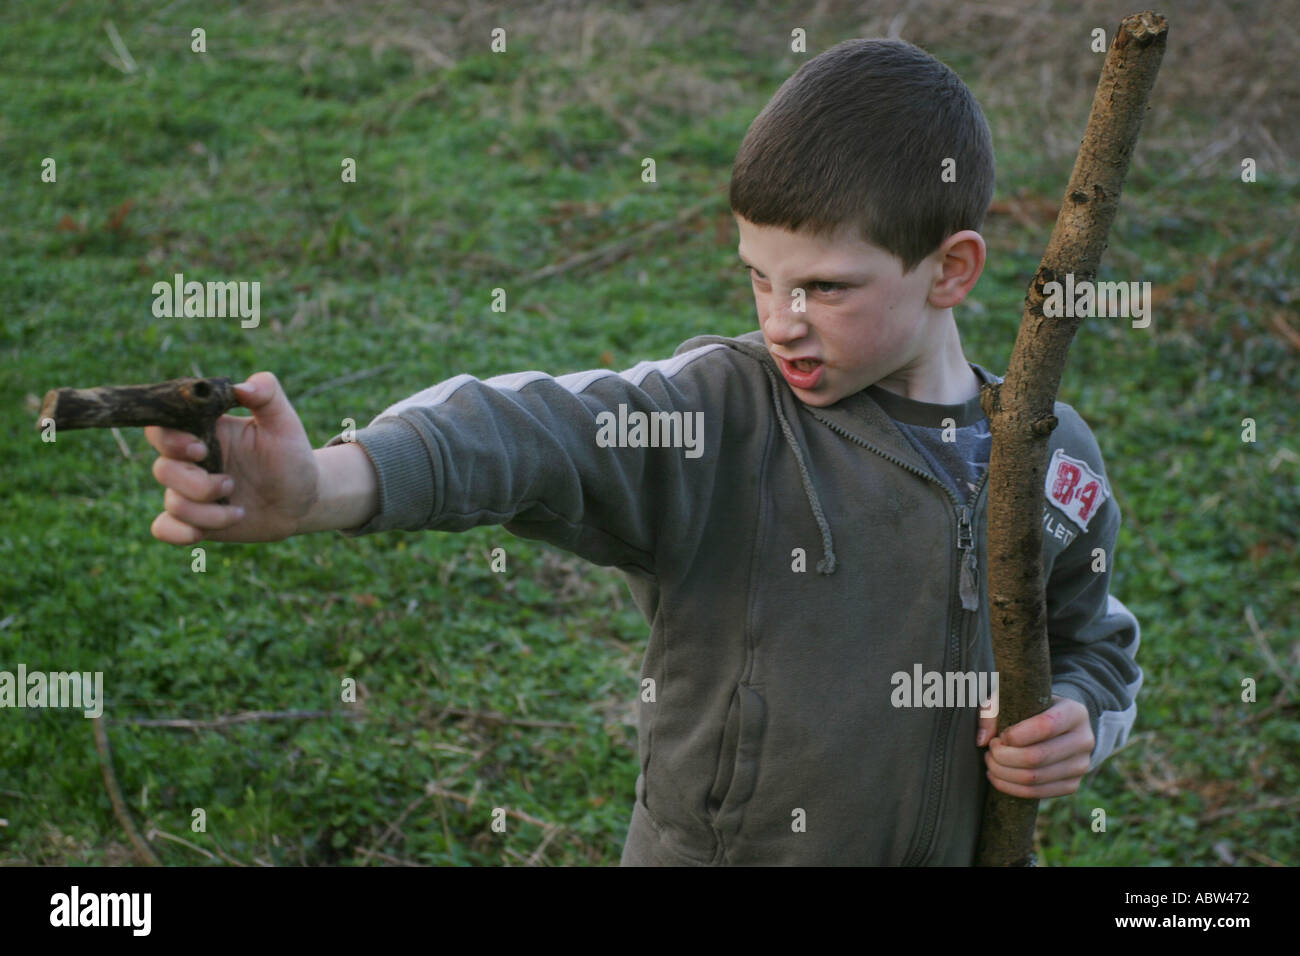 Ein 6-jähriger Junge benutzt einen Stock als Waffe während des Spielens, UK. Stockfoto